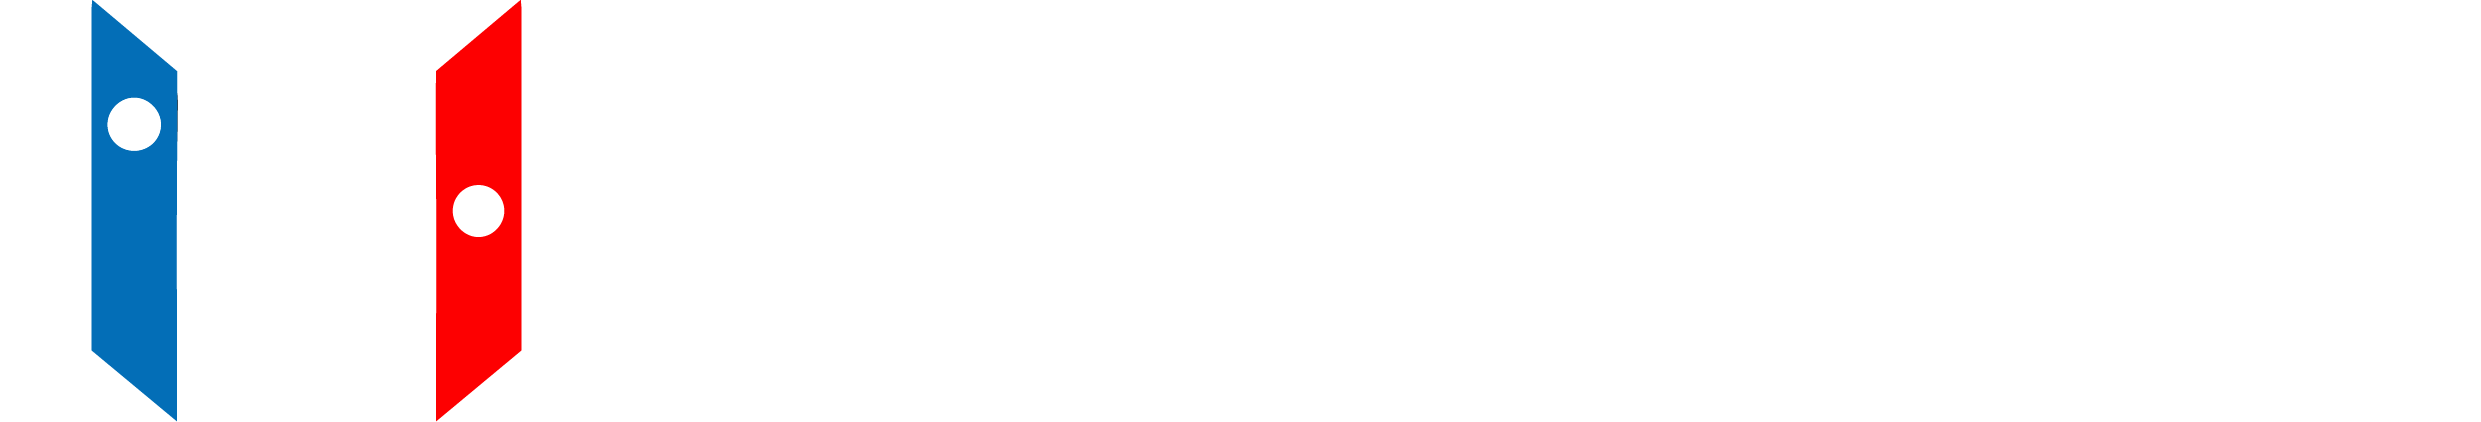 marsback-gaming-logo